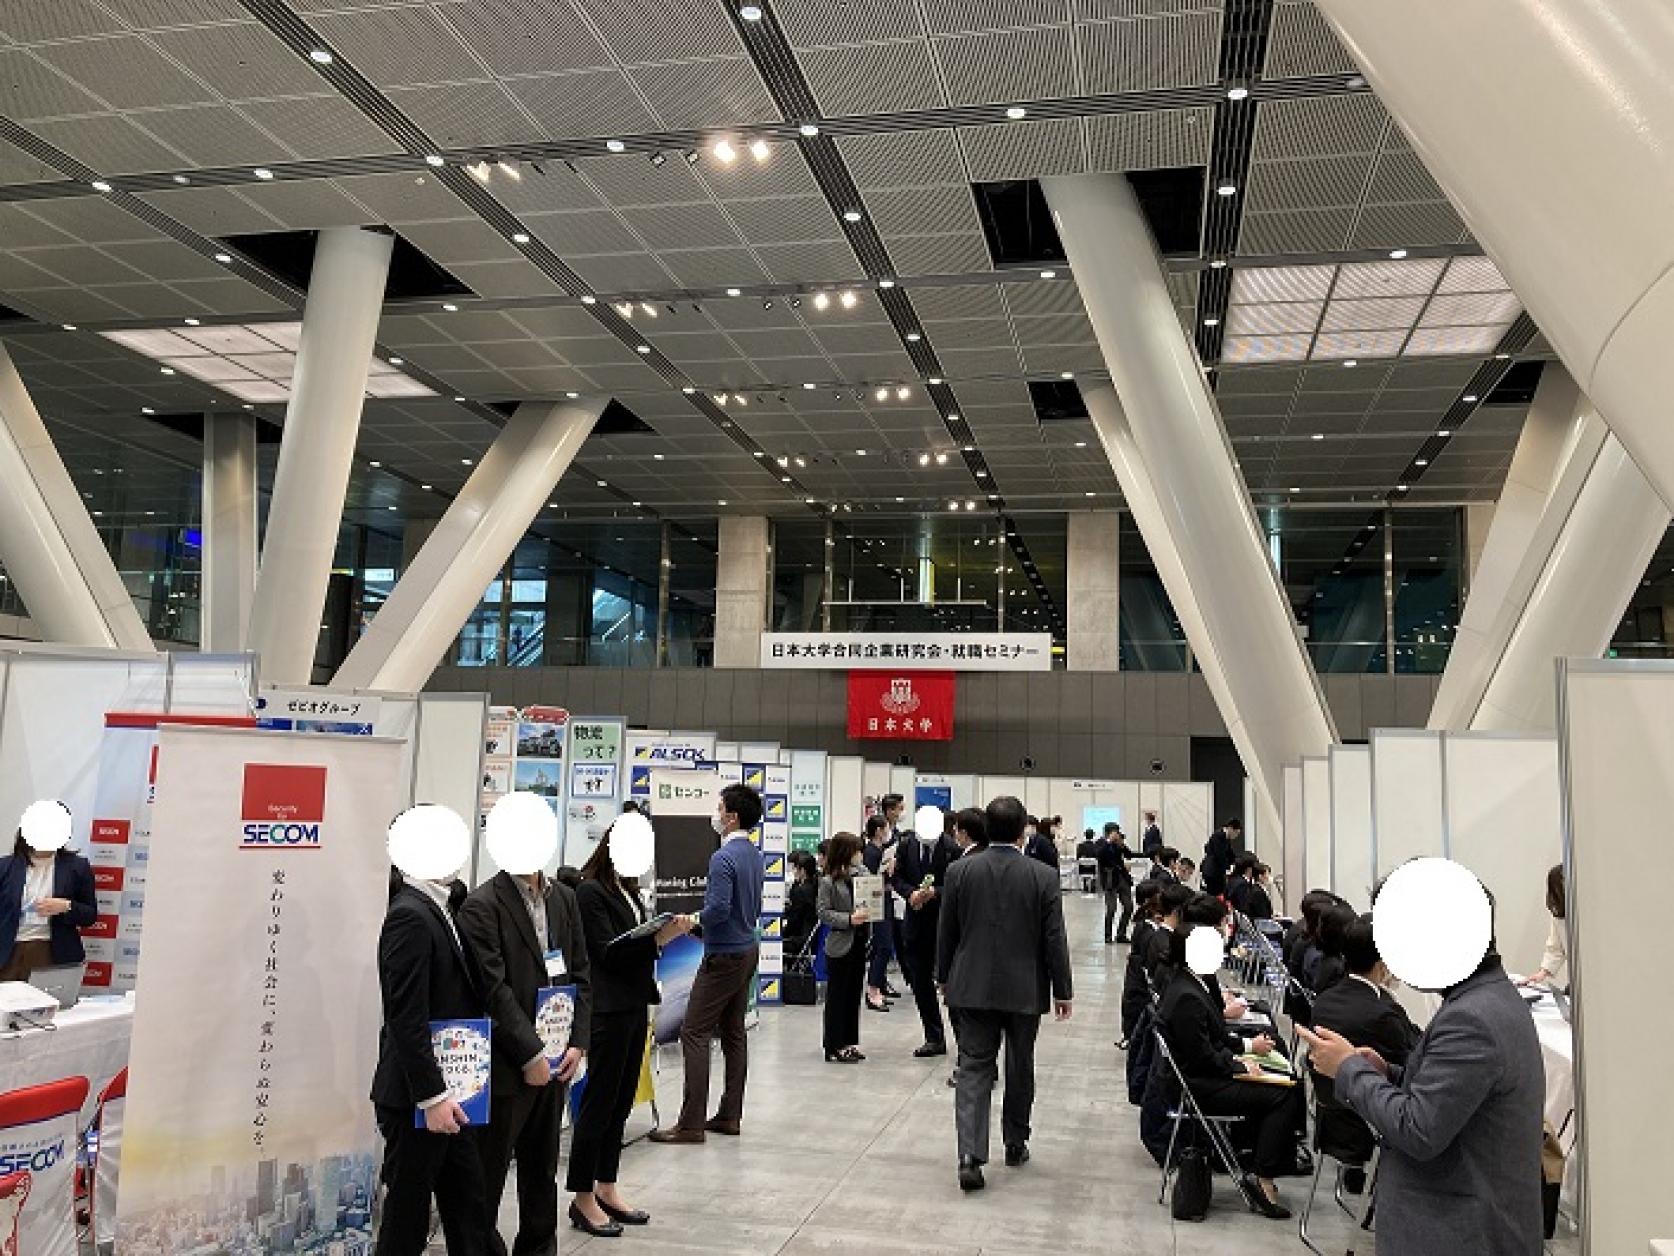 日本大学合同企業研究会・就職セミナーが開催されました。